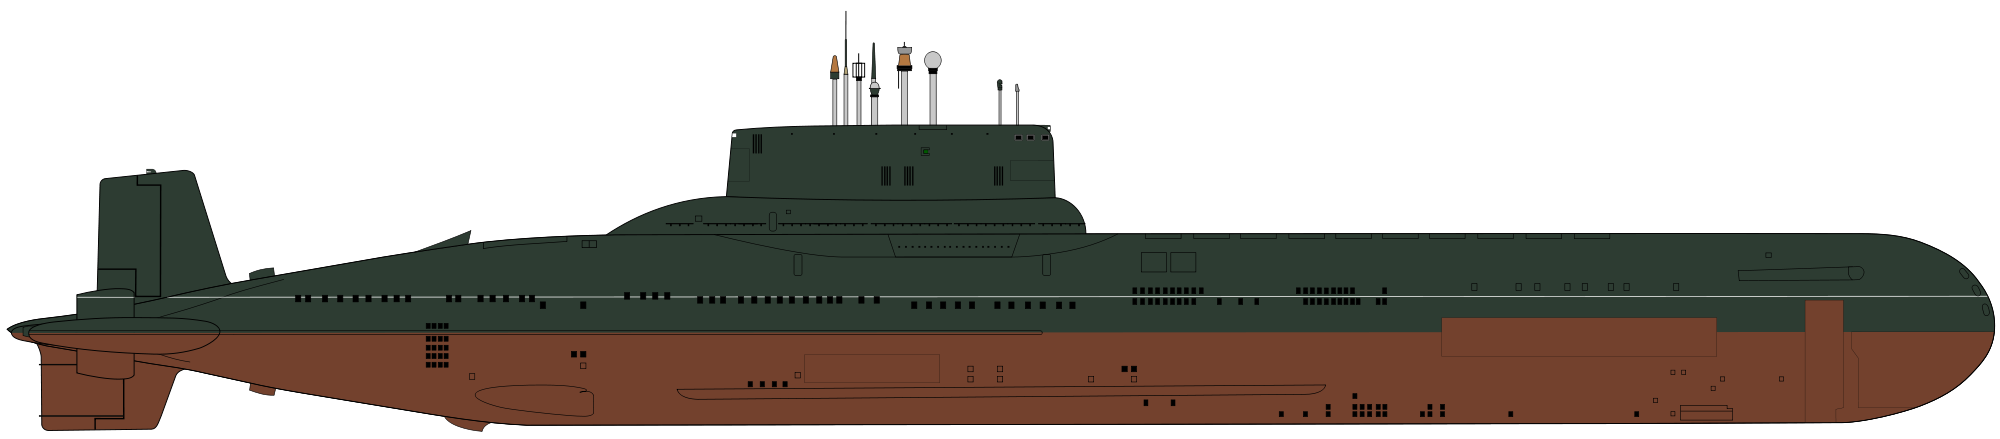 Силуэт советской ракетной стратегической подводной лодки проекта 941 «Акула» (класс Typhoon)